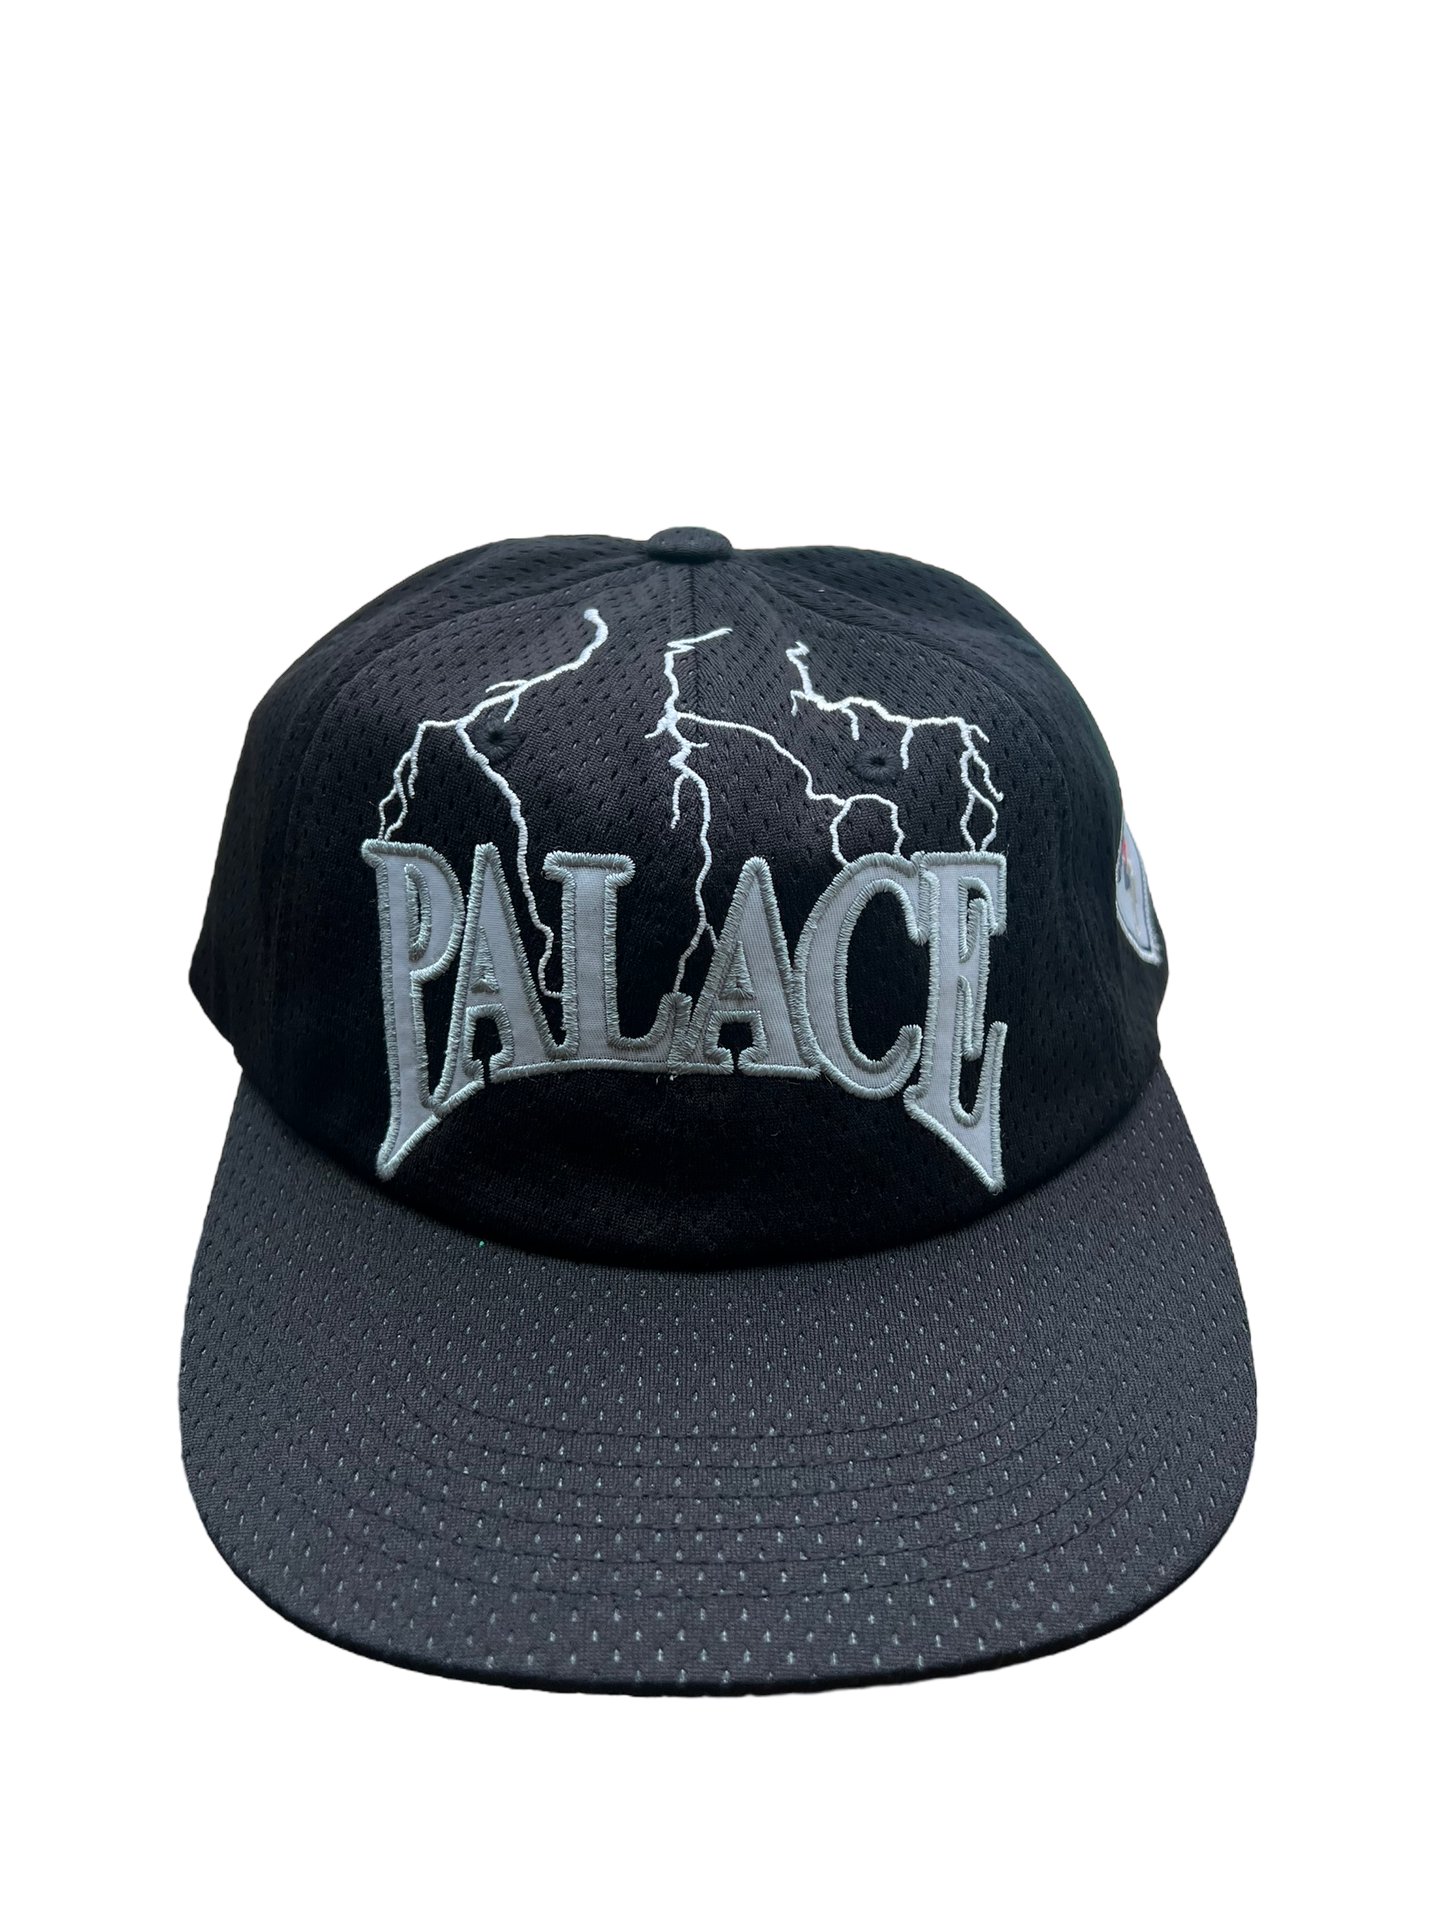 Palace Hesh Athletic Hat